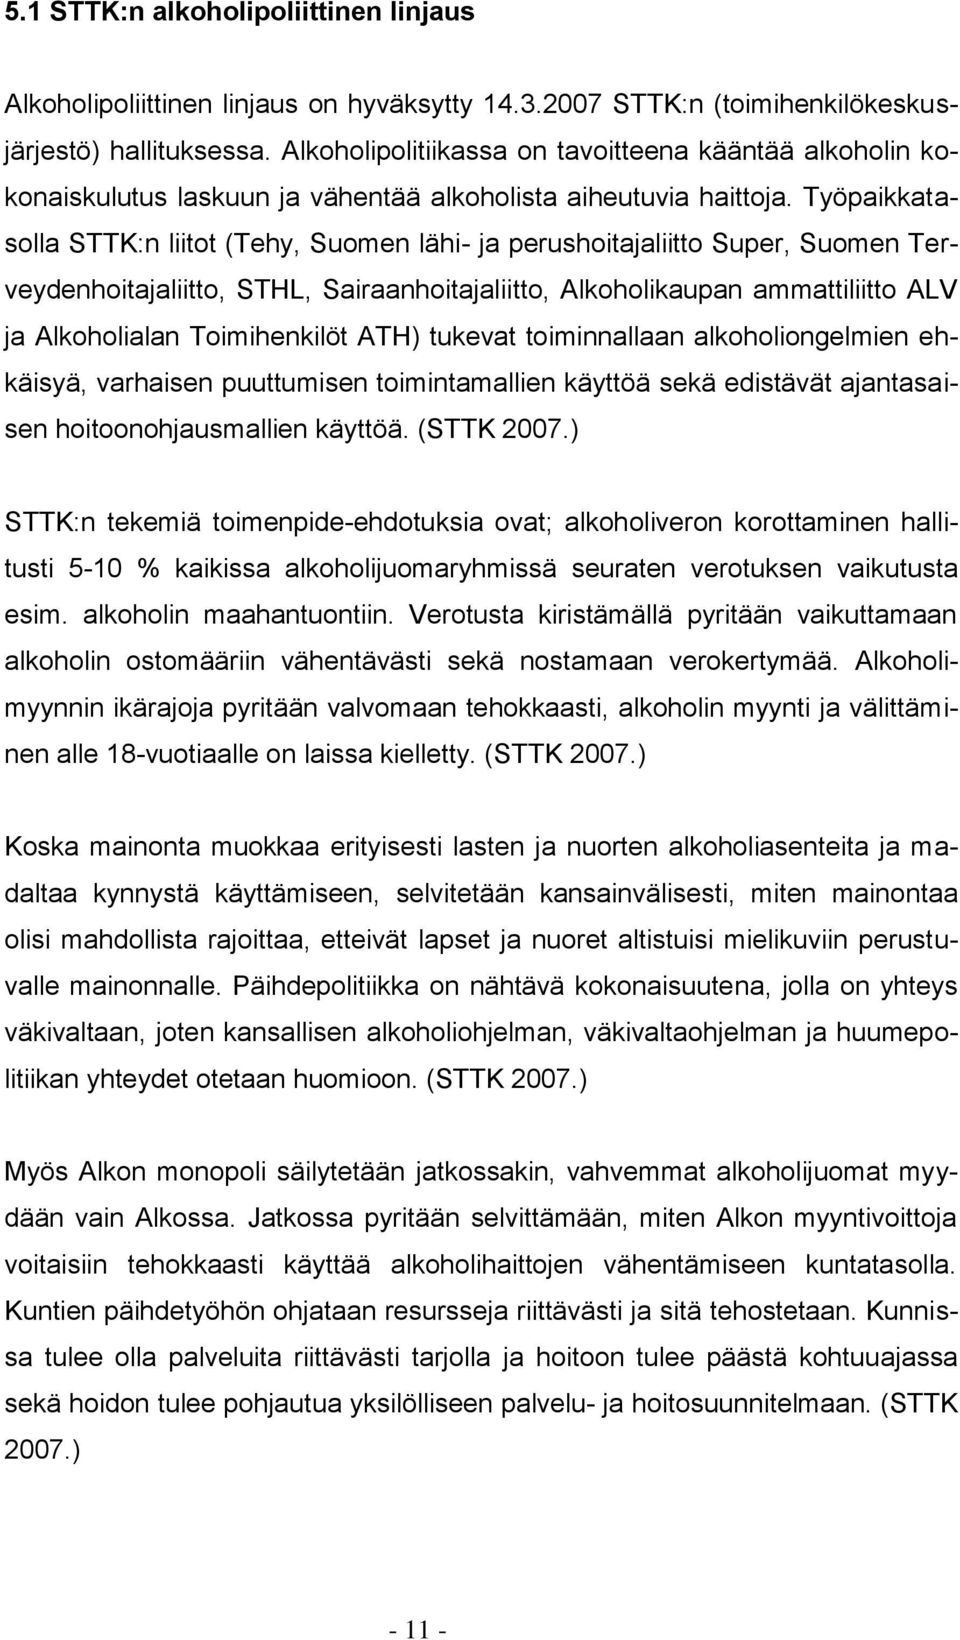 Työpaikkatasolla STTK:n liitot (Tehy, Suomen lähi- ja perushoitajaliitto Super, Suomen Terveydenhoitajaliitto, STHL, Sairaanhoitajaliitto, Alkoholikaupan ammattiliitto ALV ja Alkoholialan